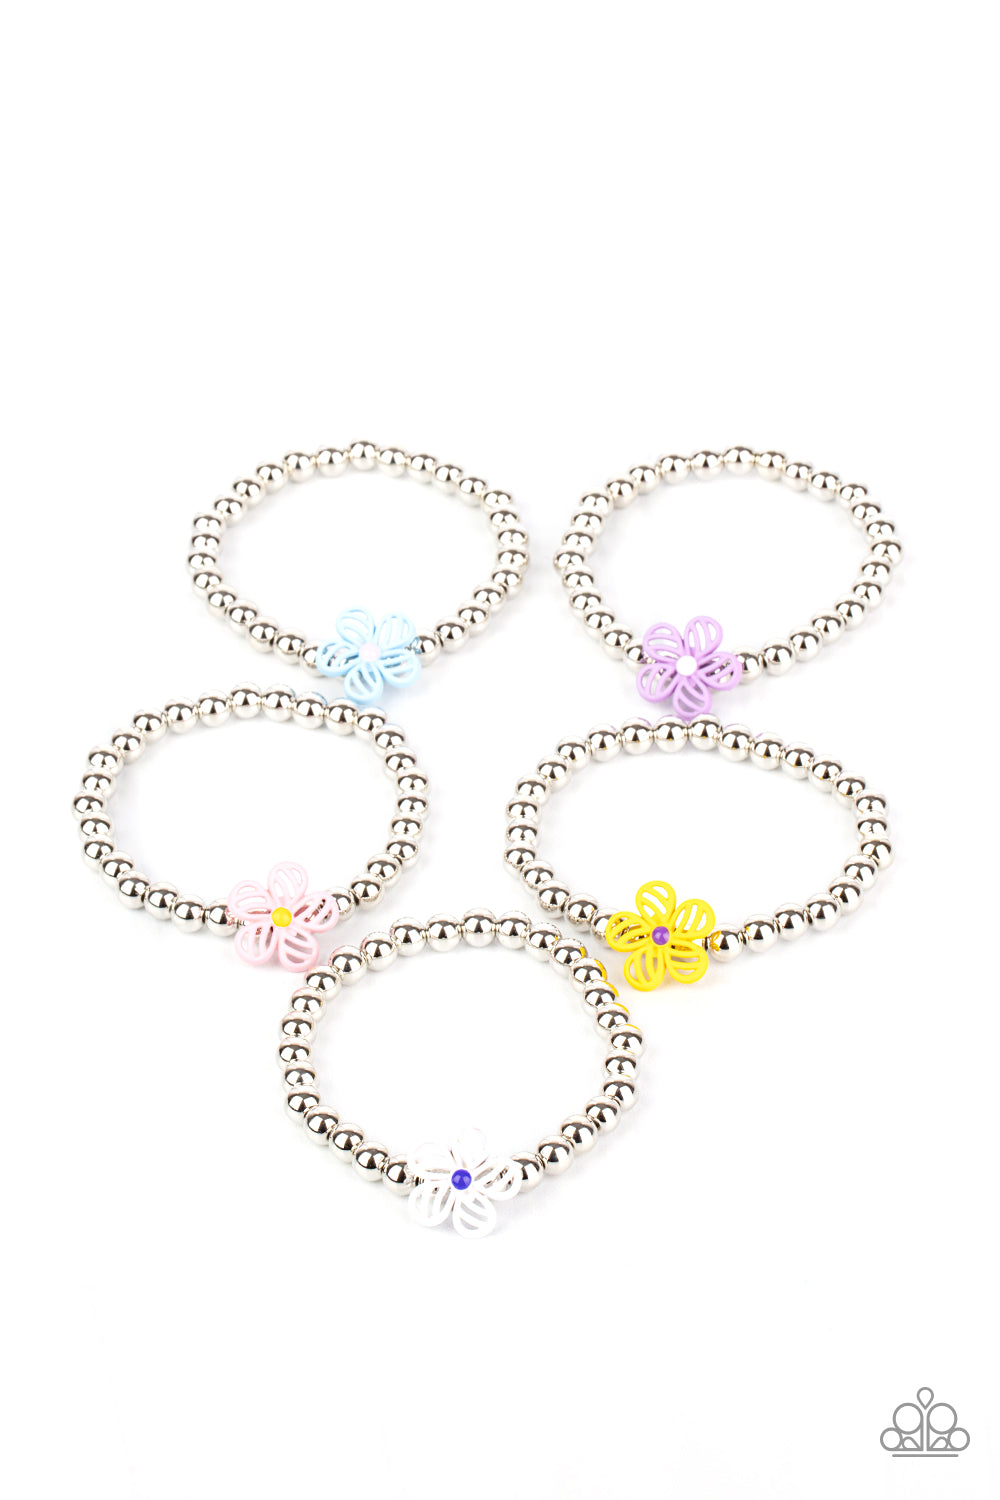 Starlet Shimmer Floral Beads Bracelet Kit - The V Resale Boutique